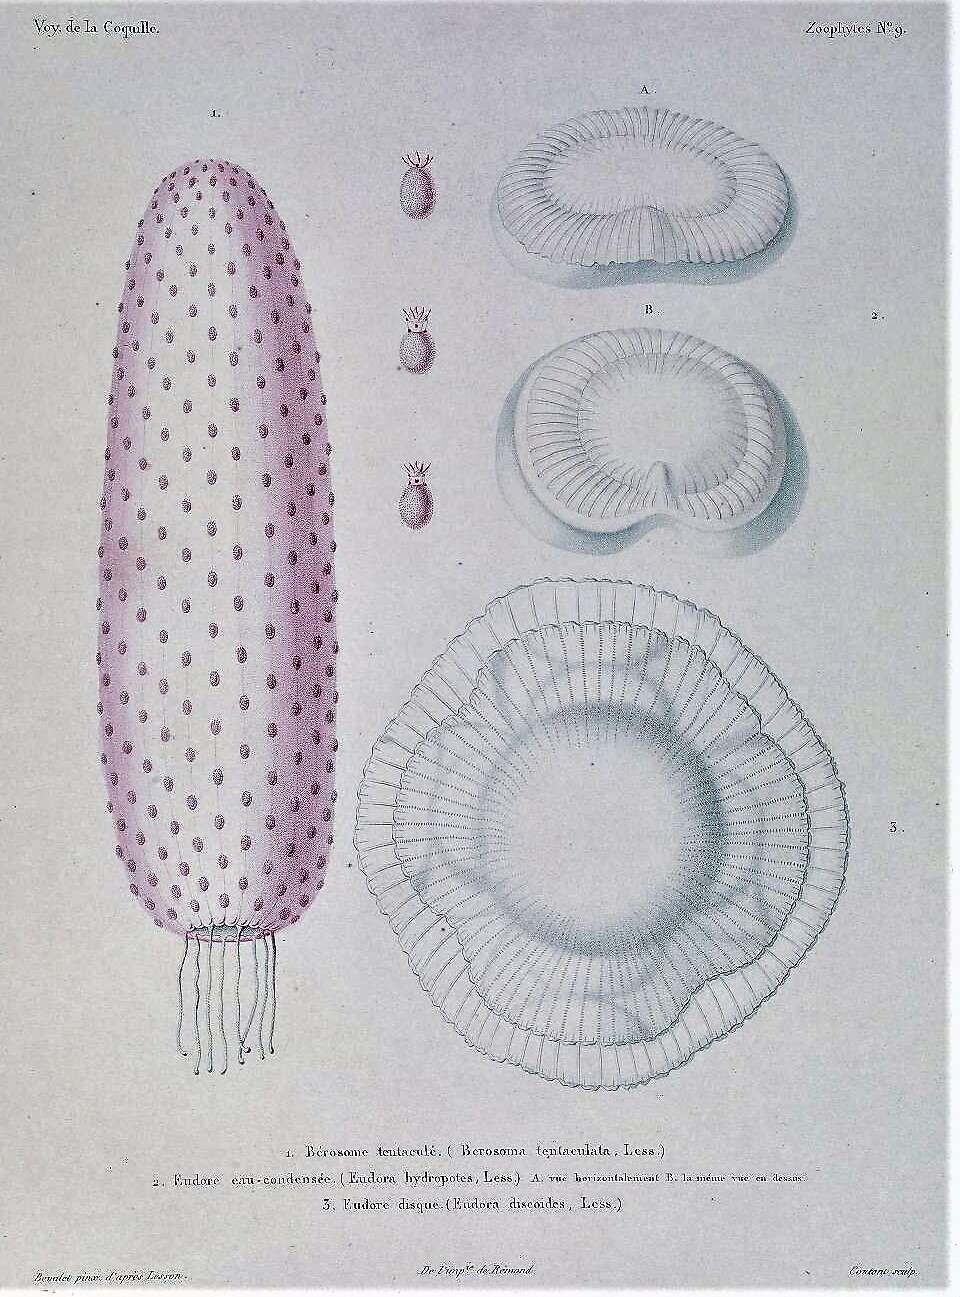 Image of Tentaculata Eschscholtz 1825